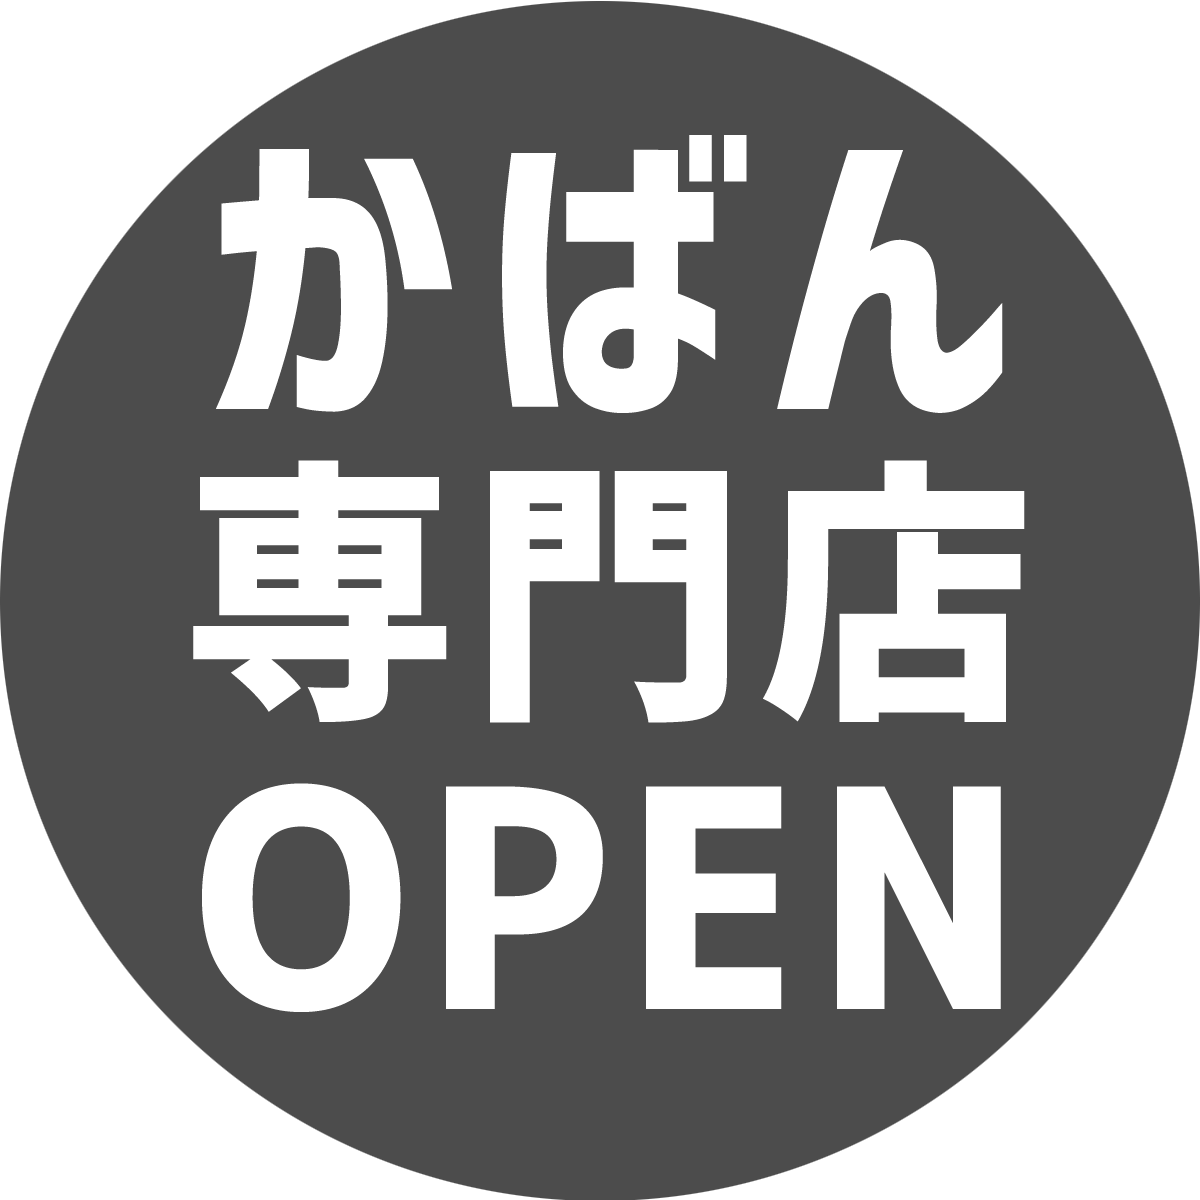 eYASHI Shop 姉妹店、eKABAN Open！